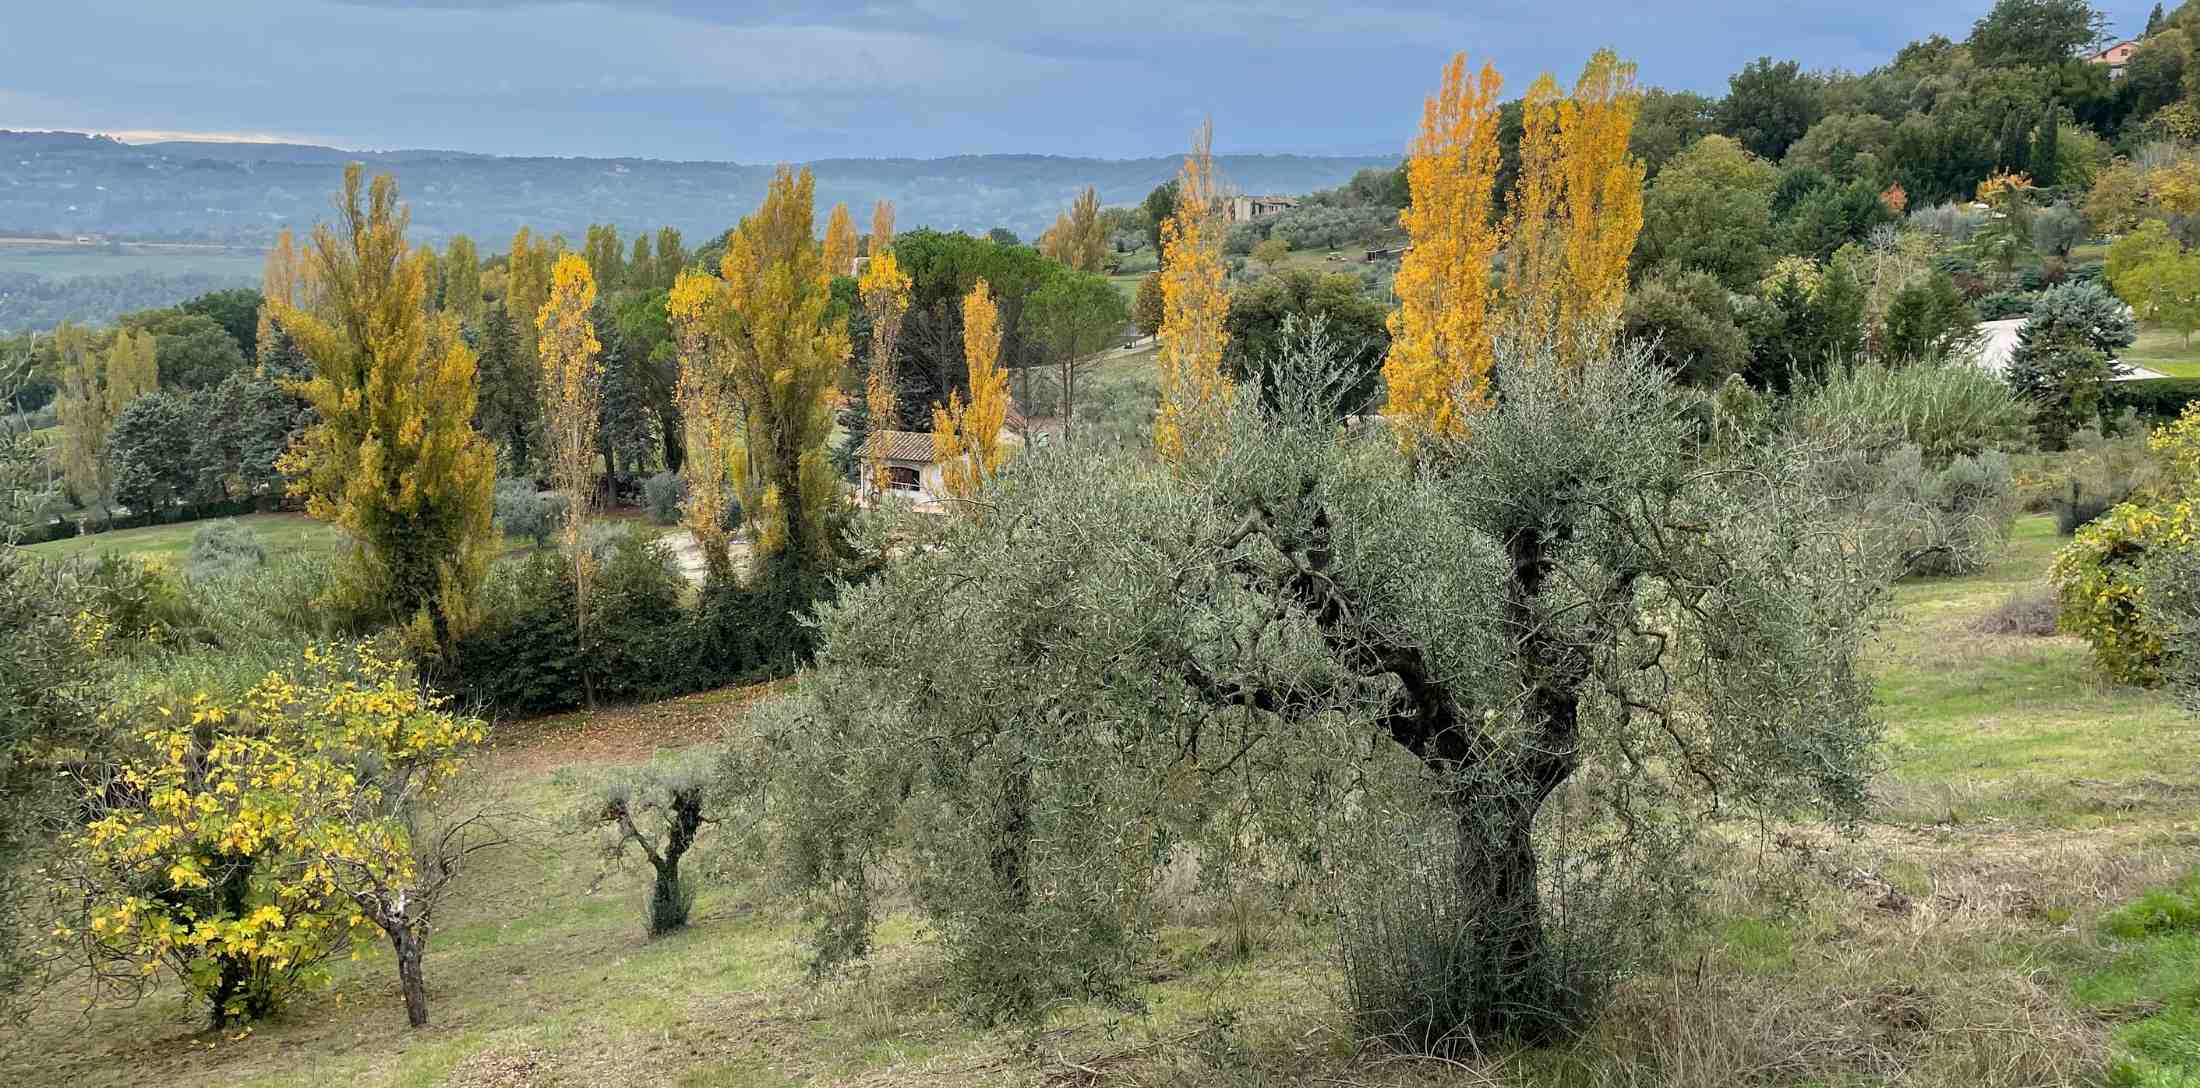 13 novembre 2022, Penna in foliage, esperienze di San Martino.